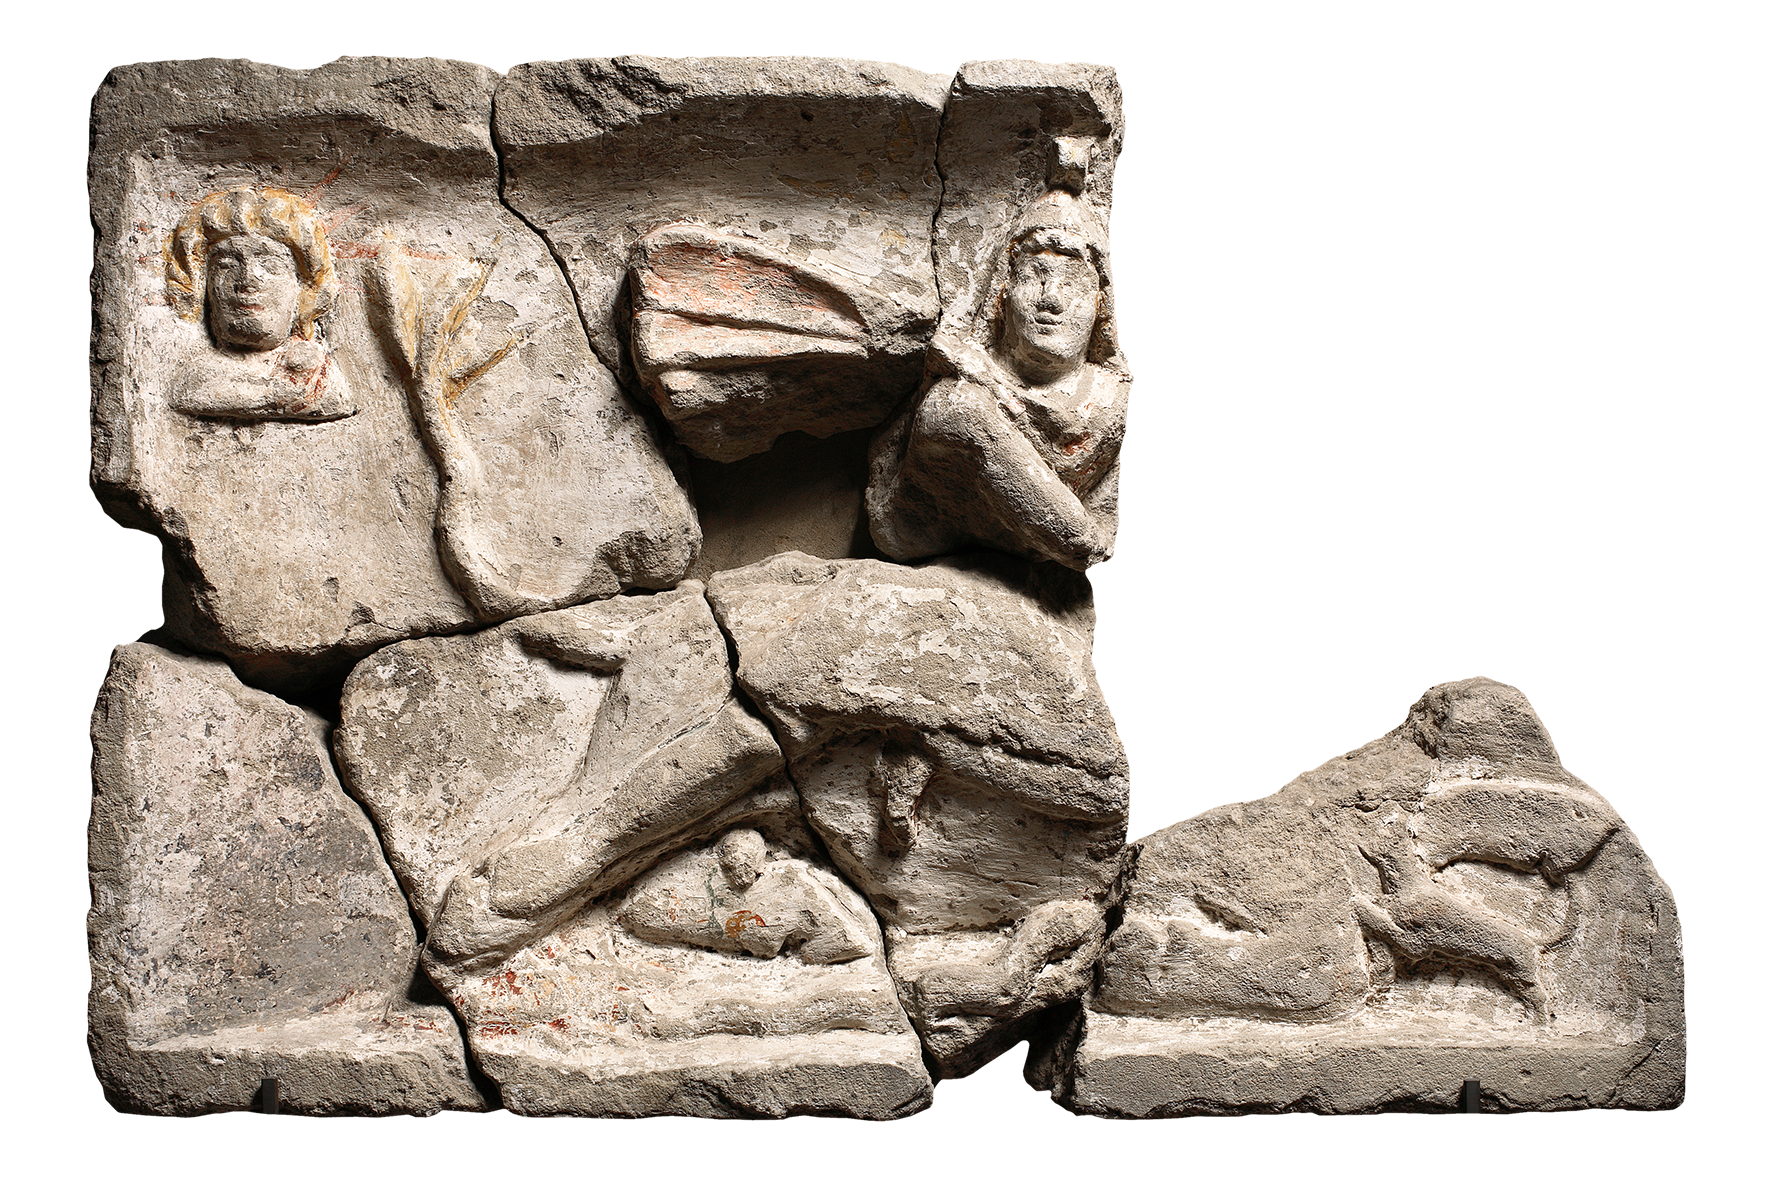 Tauroktonierelief aus dem Bereich des Auxiliarkastells von Carnuntum, Archäologisches Museum Carnuntinum Inv. CAR-S-99 (©AMC/N. Gail)